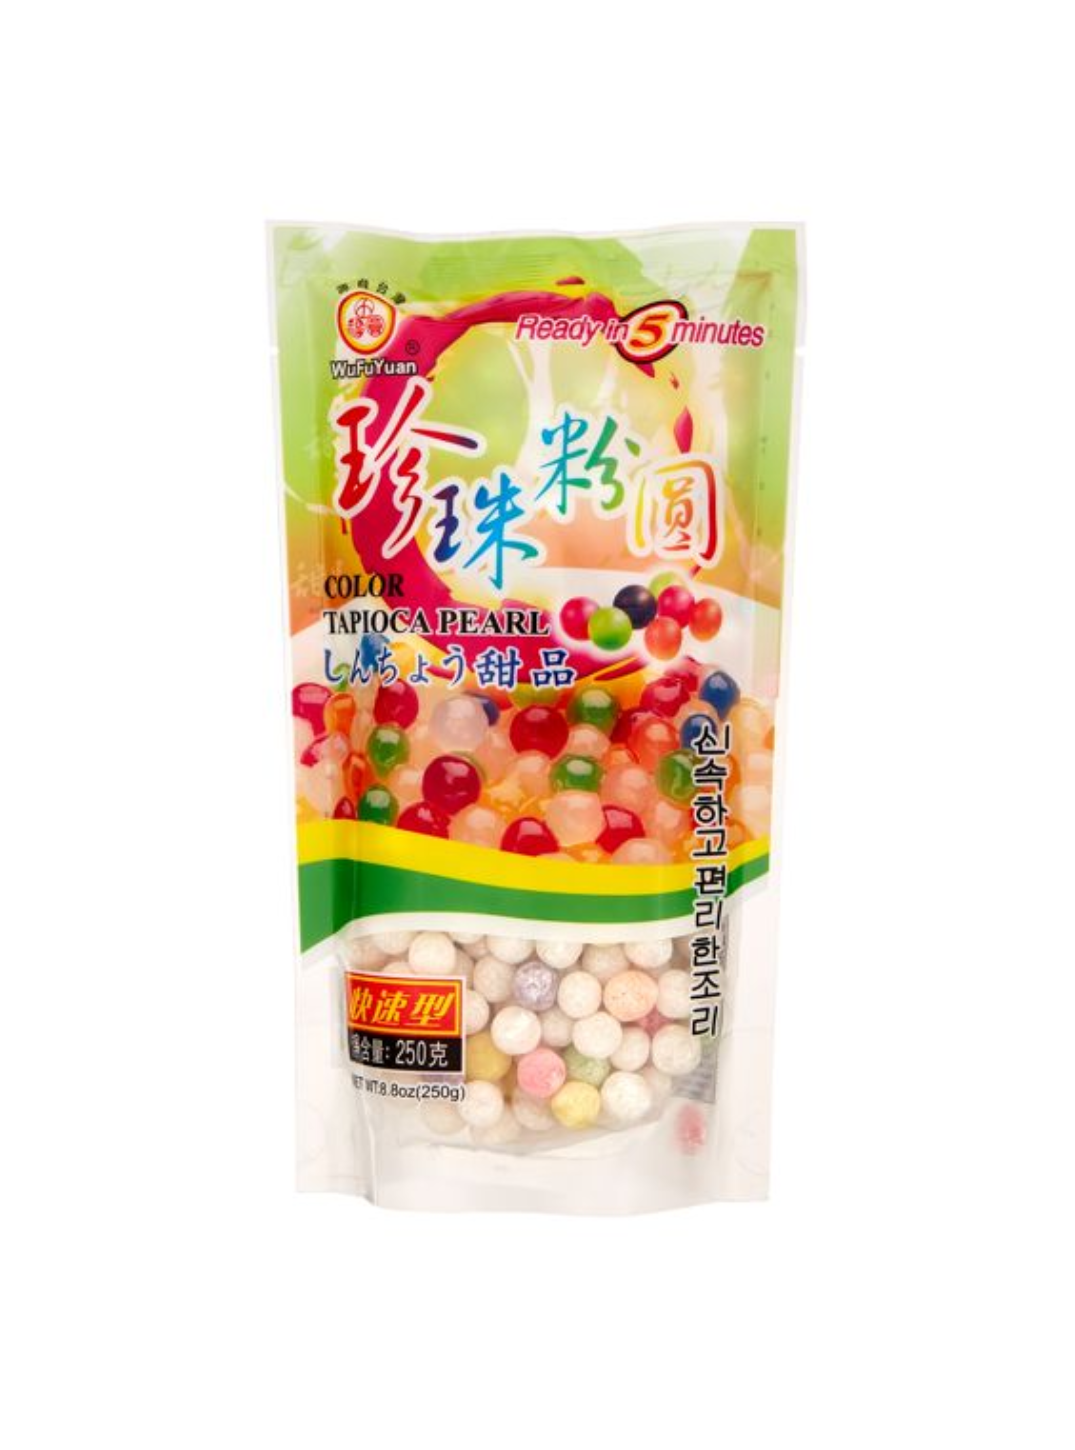 WuFuYuan Tapioca pearls color (彩色珍珠西米)